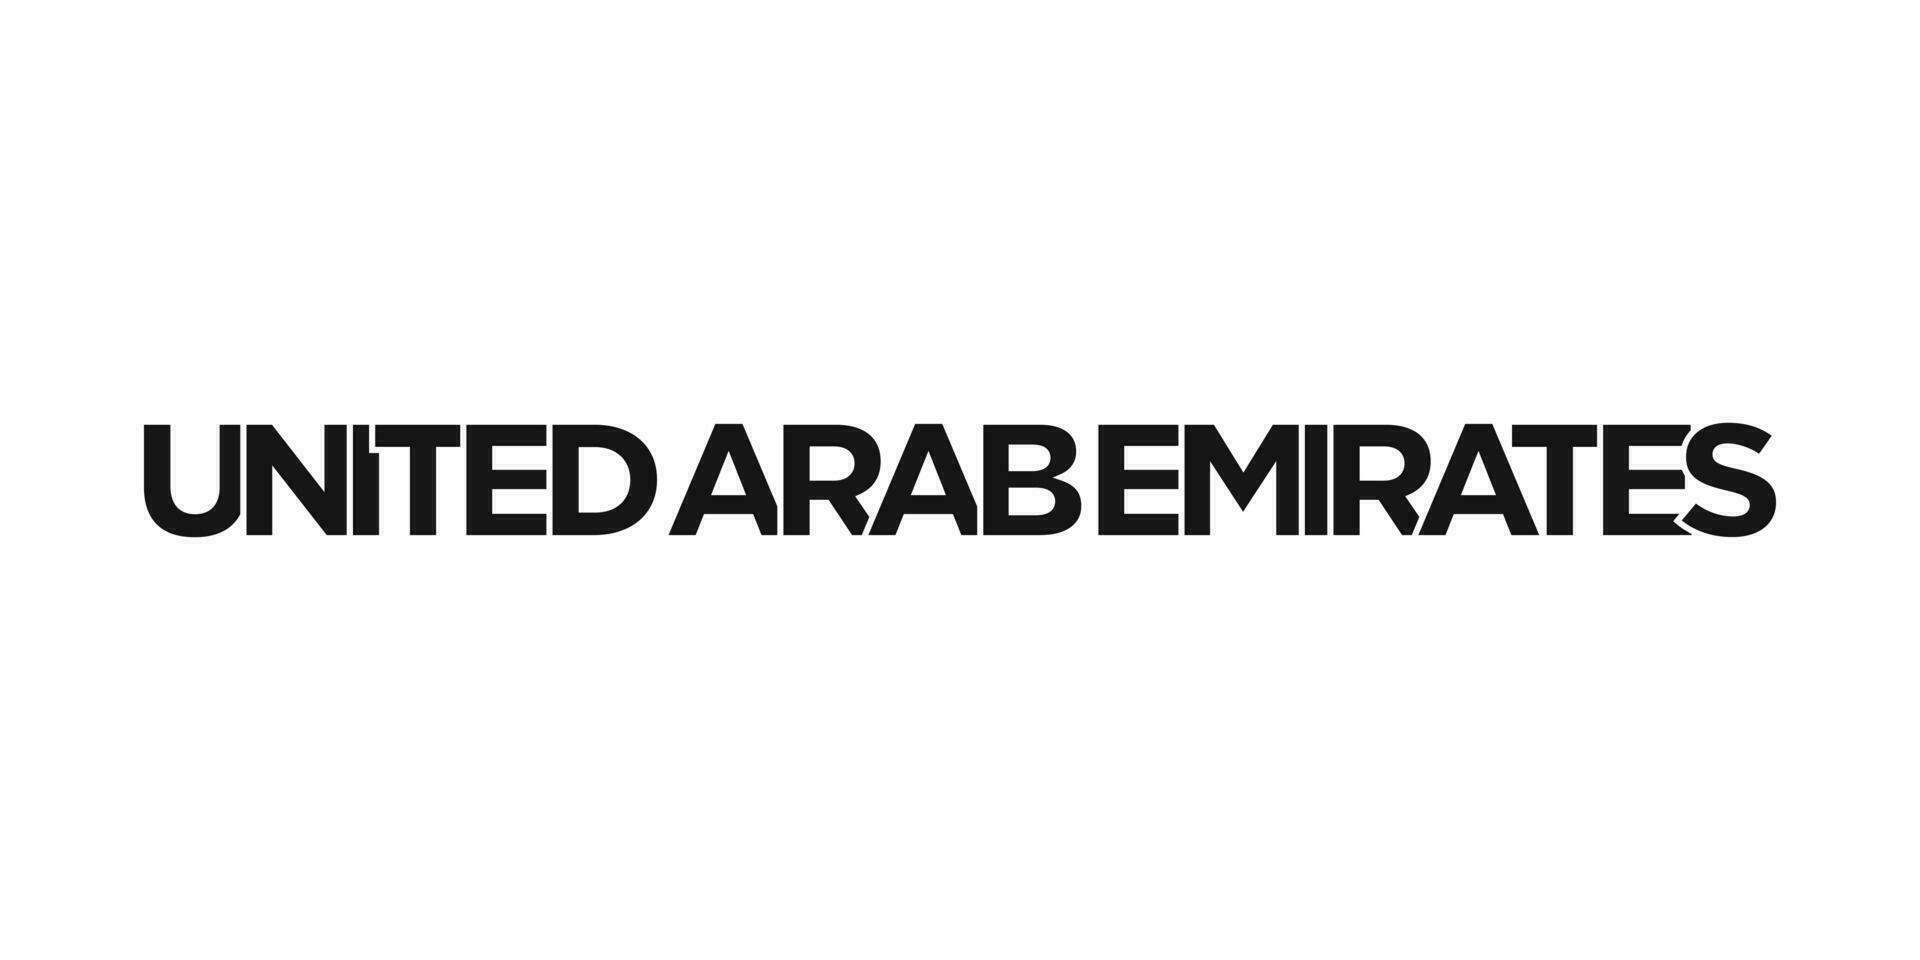 vereinigt arabisch Emirate Emblem. das Design Eigenschaften ein geometrisch Stil, Vektor Illustration mit Fett gedruckt Typografie im ein modern Schriftart. das Grafik Slogan Beschriftung.